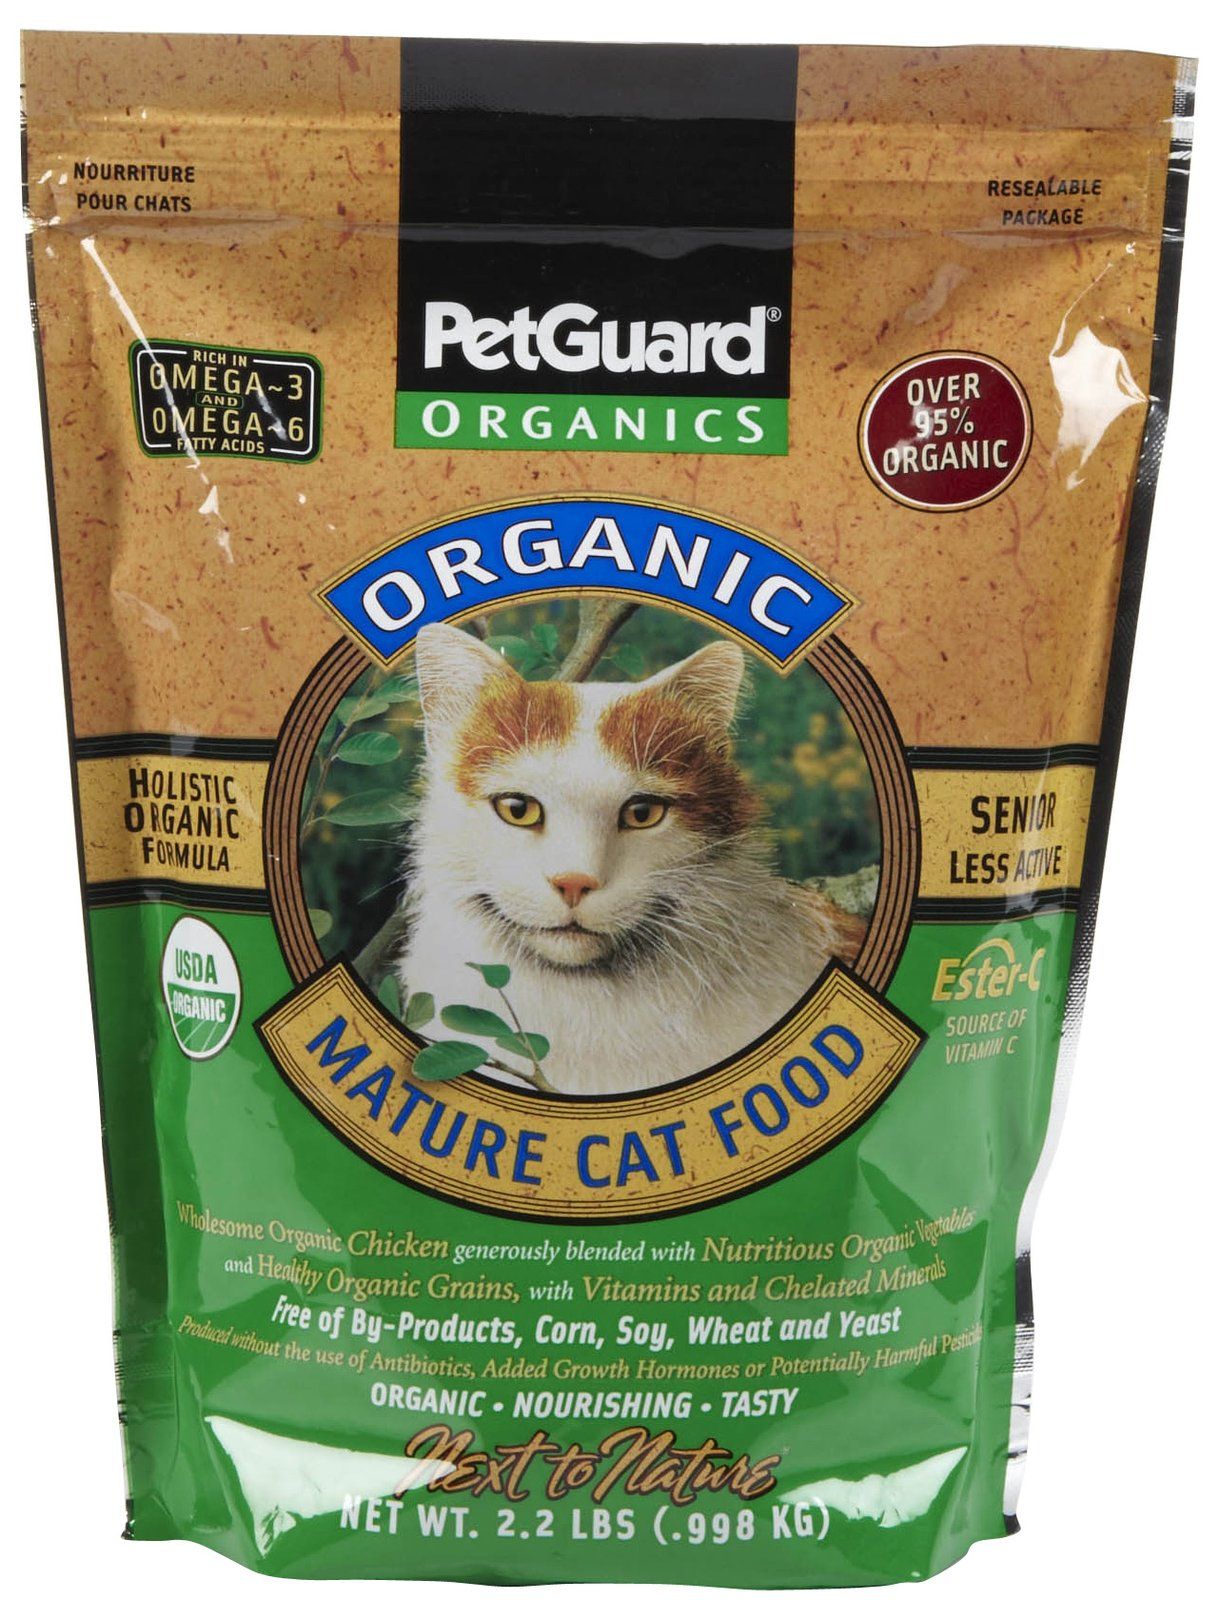 Petguard mature cat food